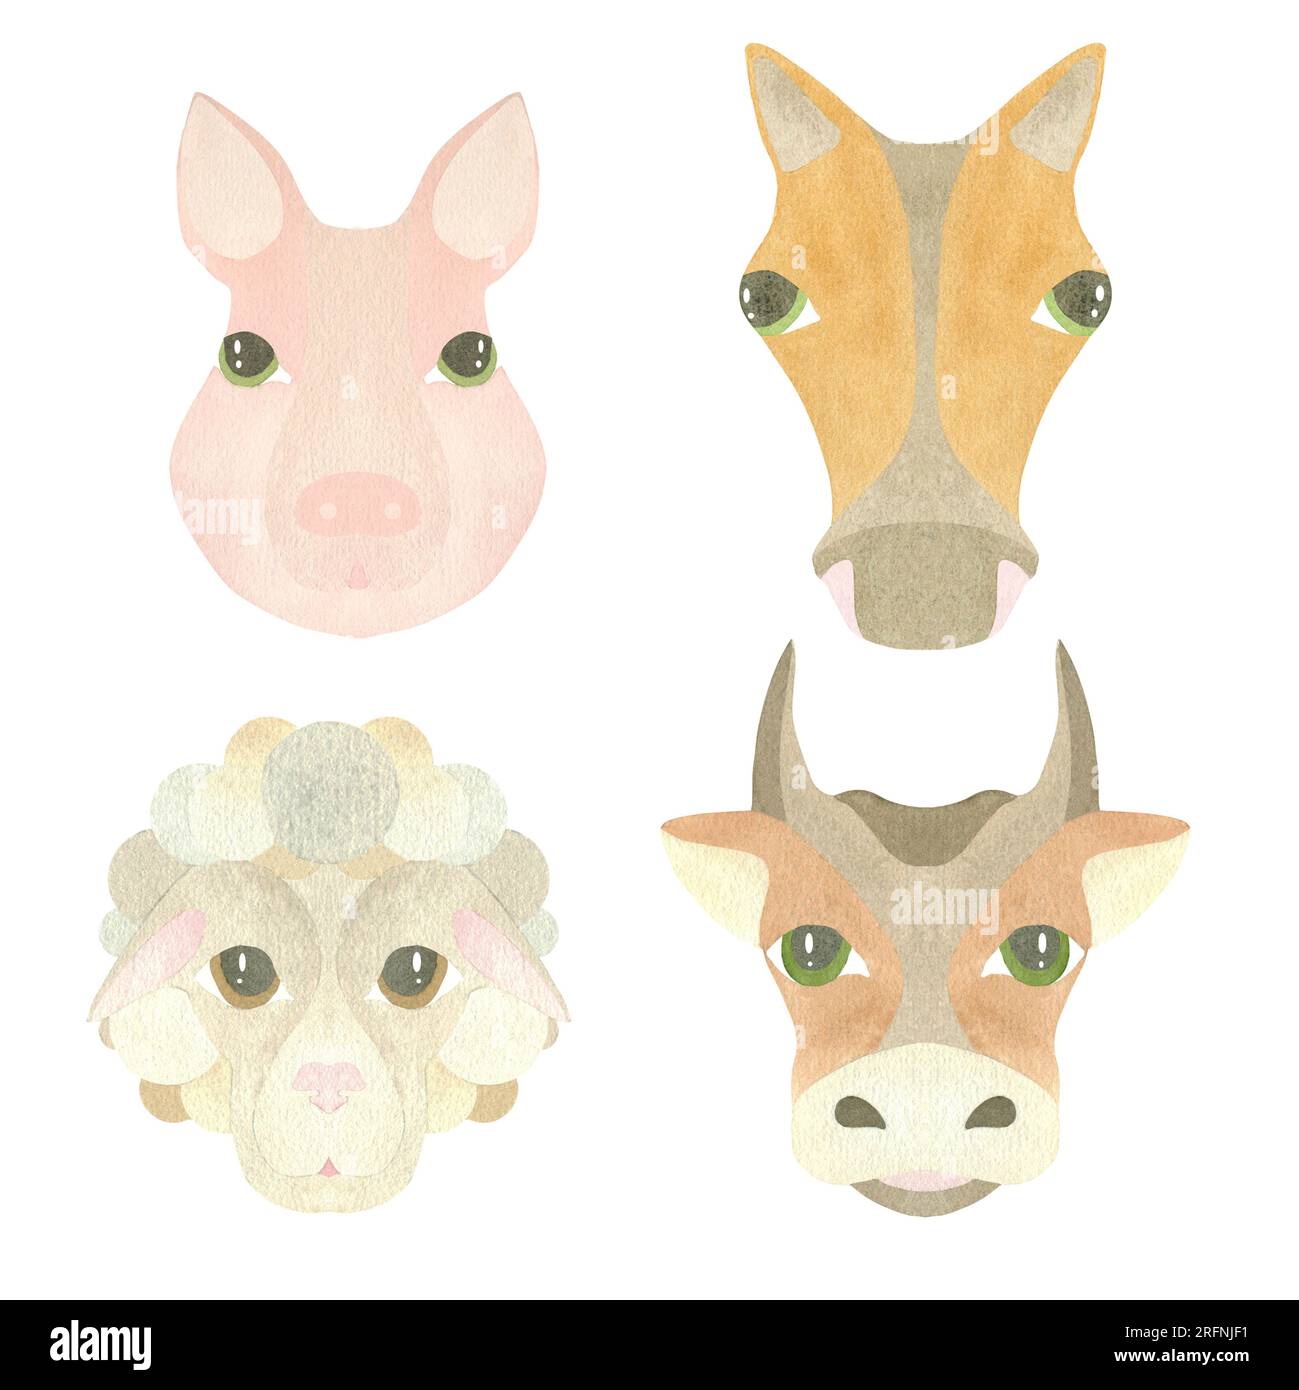 Ensemble d'aquarelle de visages d'animaux mignons - cochon, mouton, vache et cheval, mis en évidence sur un fond blanc. Illustration. UN ENSEMBLE DE VISAGES D'ANIMAUX. Pour le desig Banque D'Images